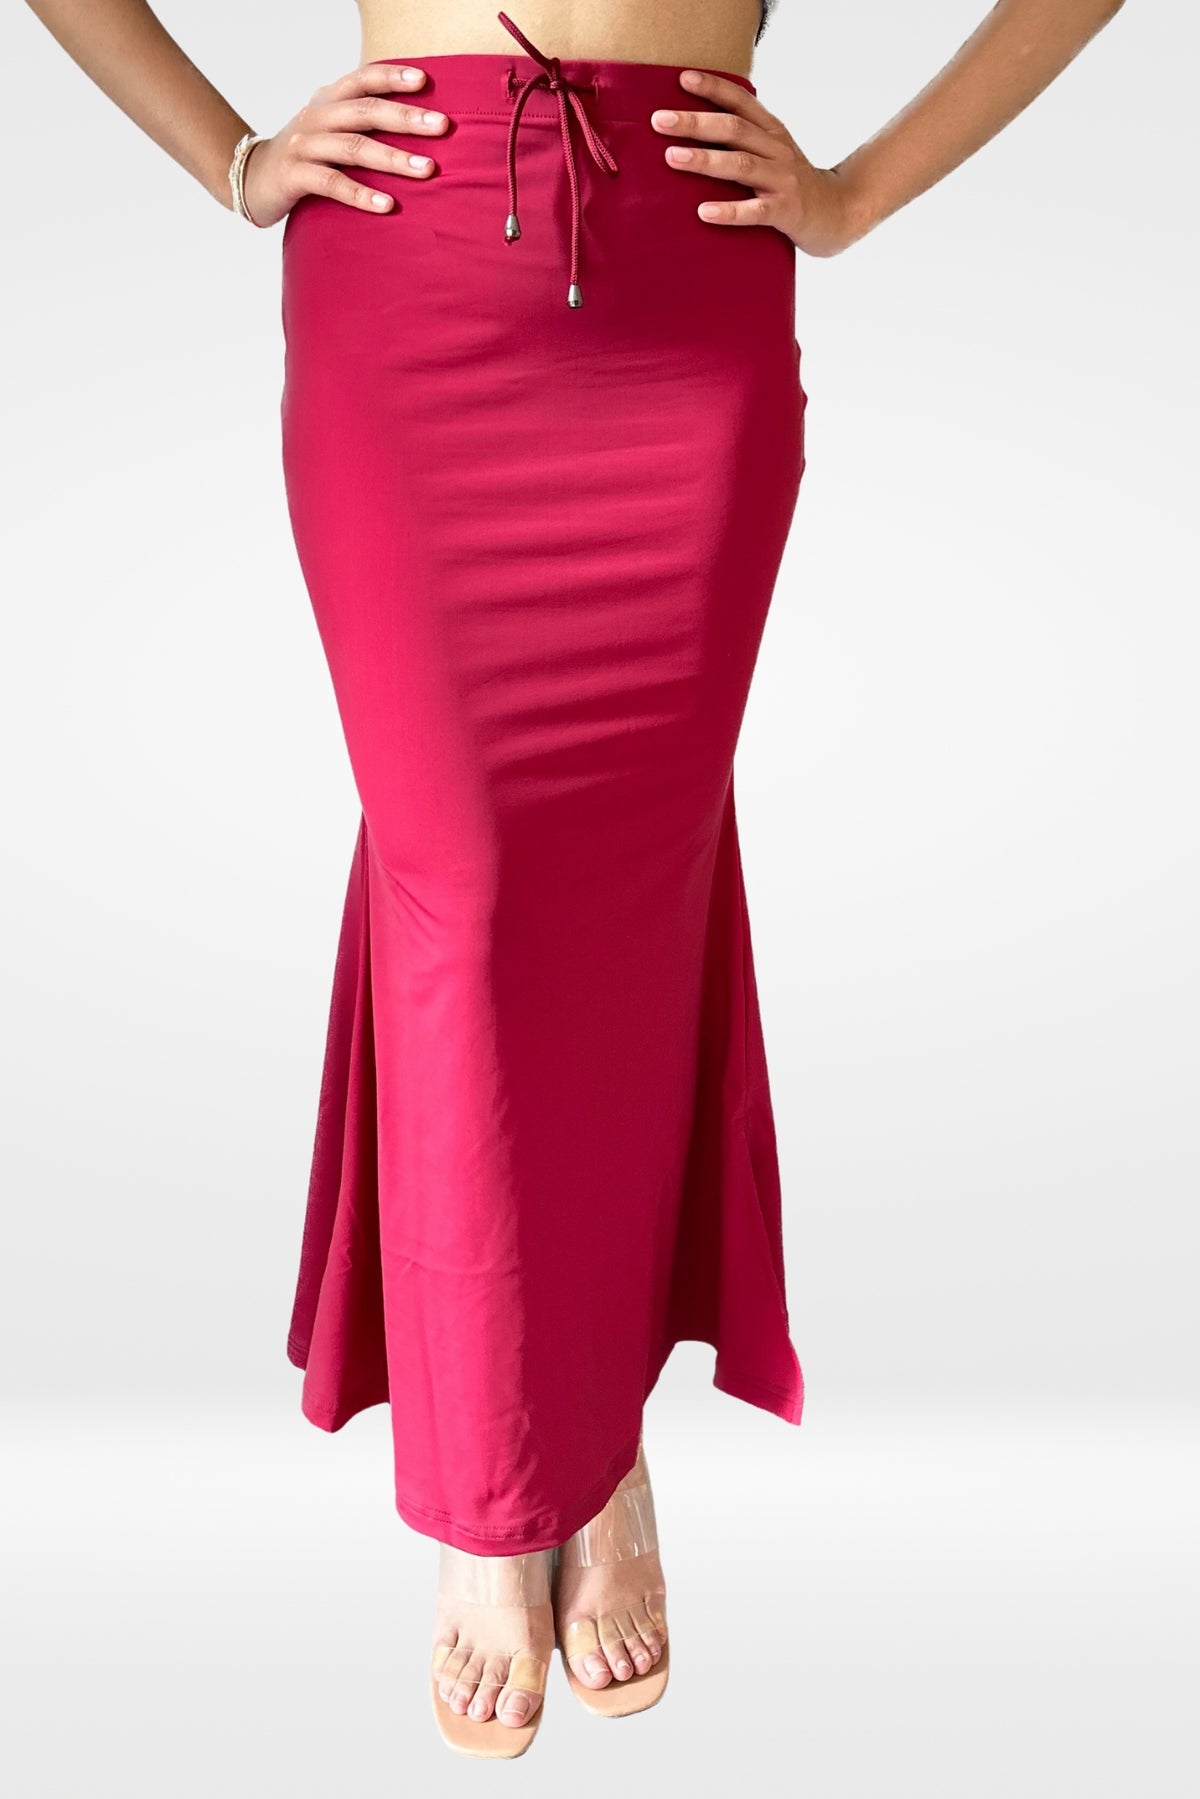 Mirraw Women's Solid Microfiber Saree Shapewear Petticoat Waist